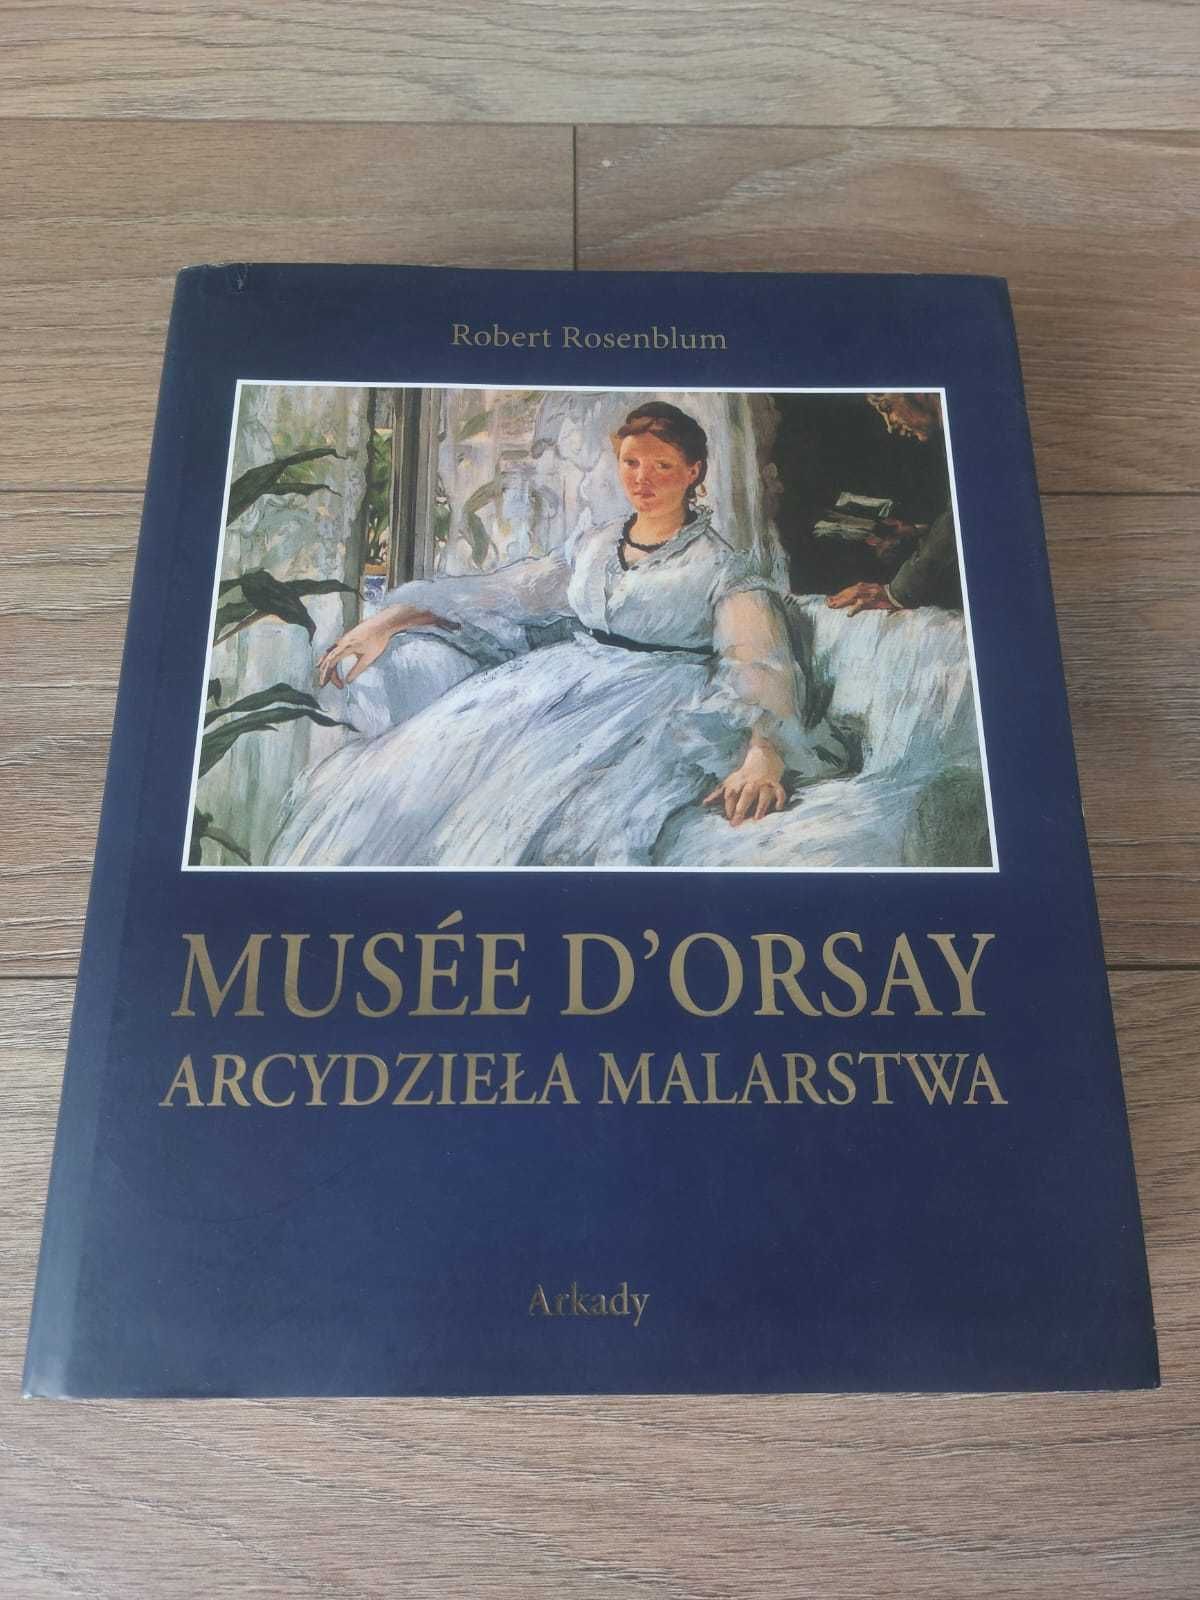 Musee D'orsay Arcydzieła malarstwa wyd. Arkady